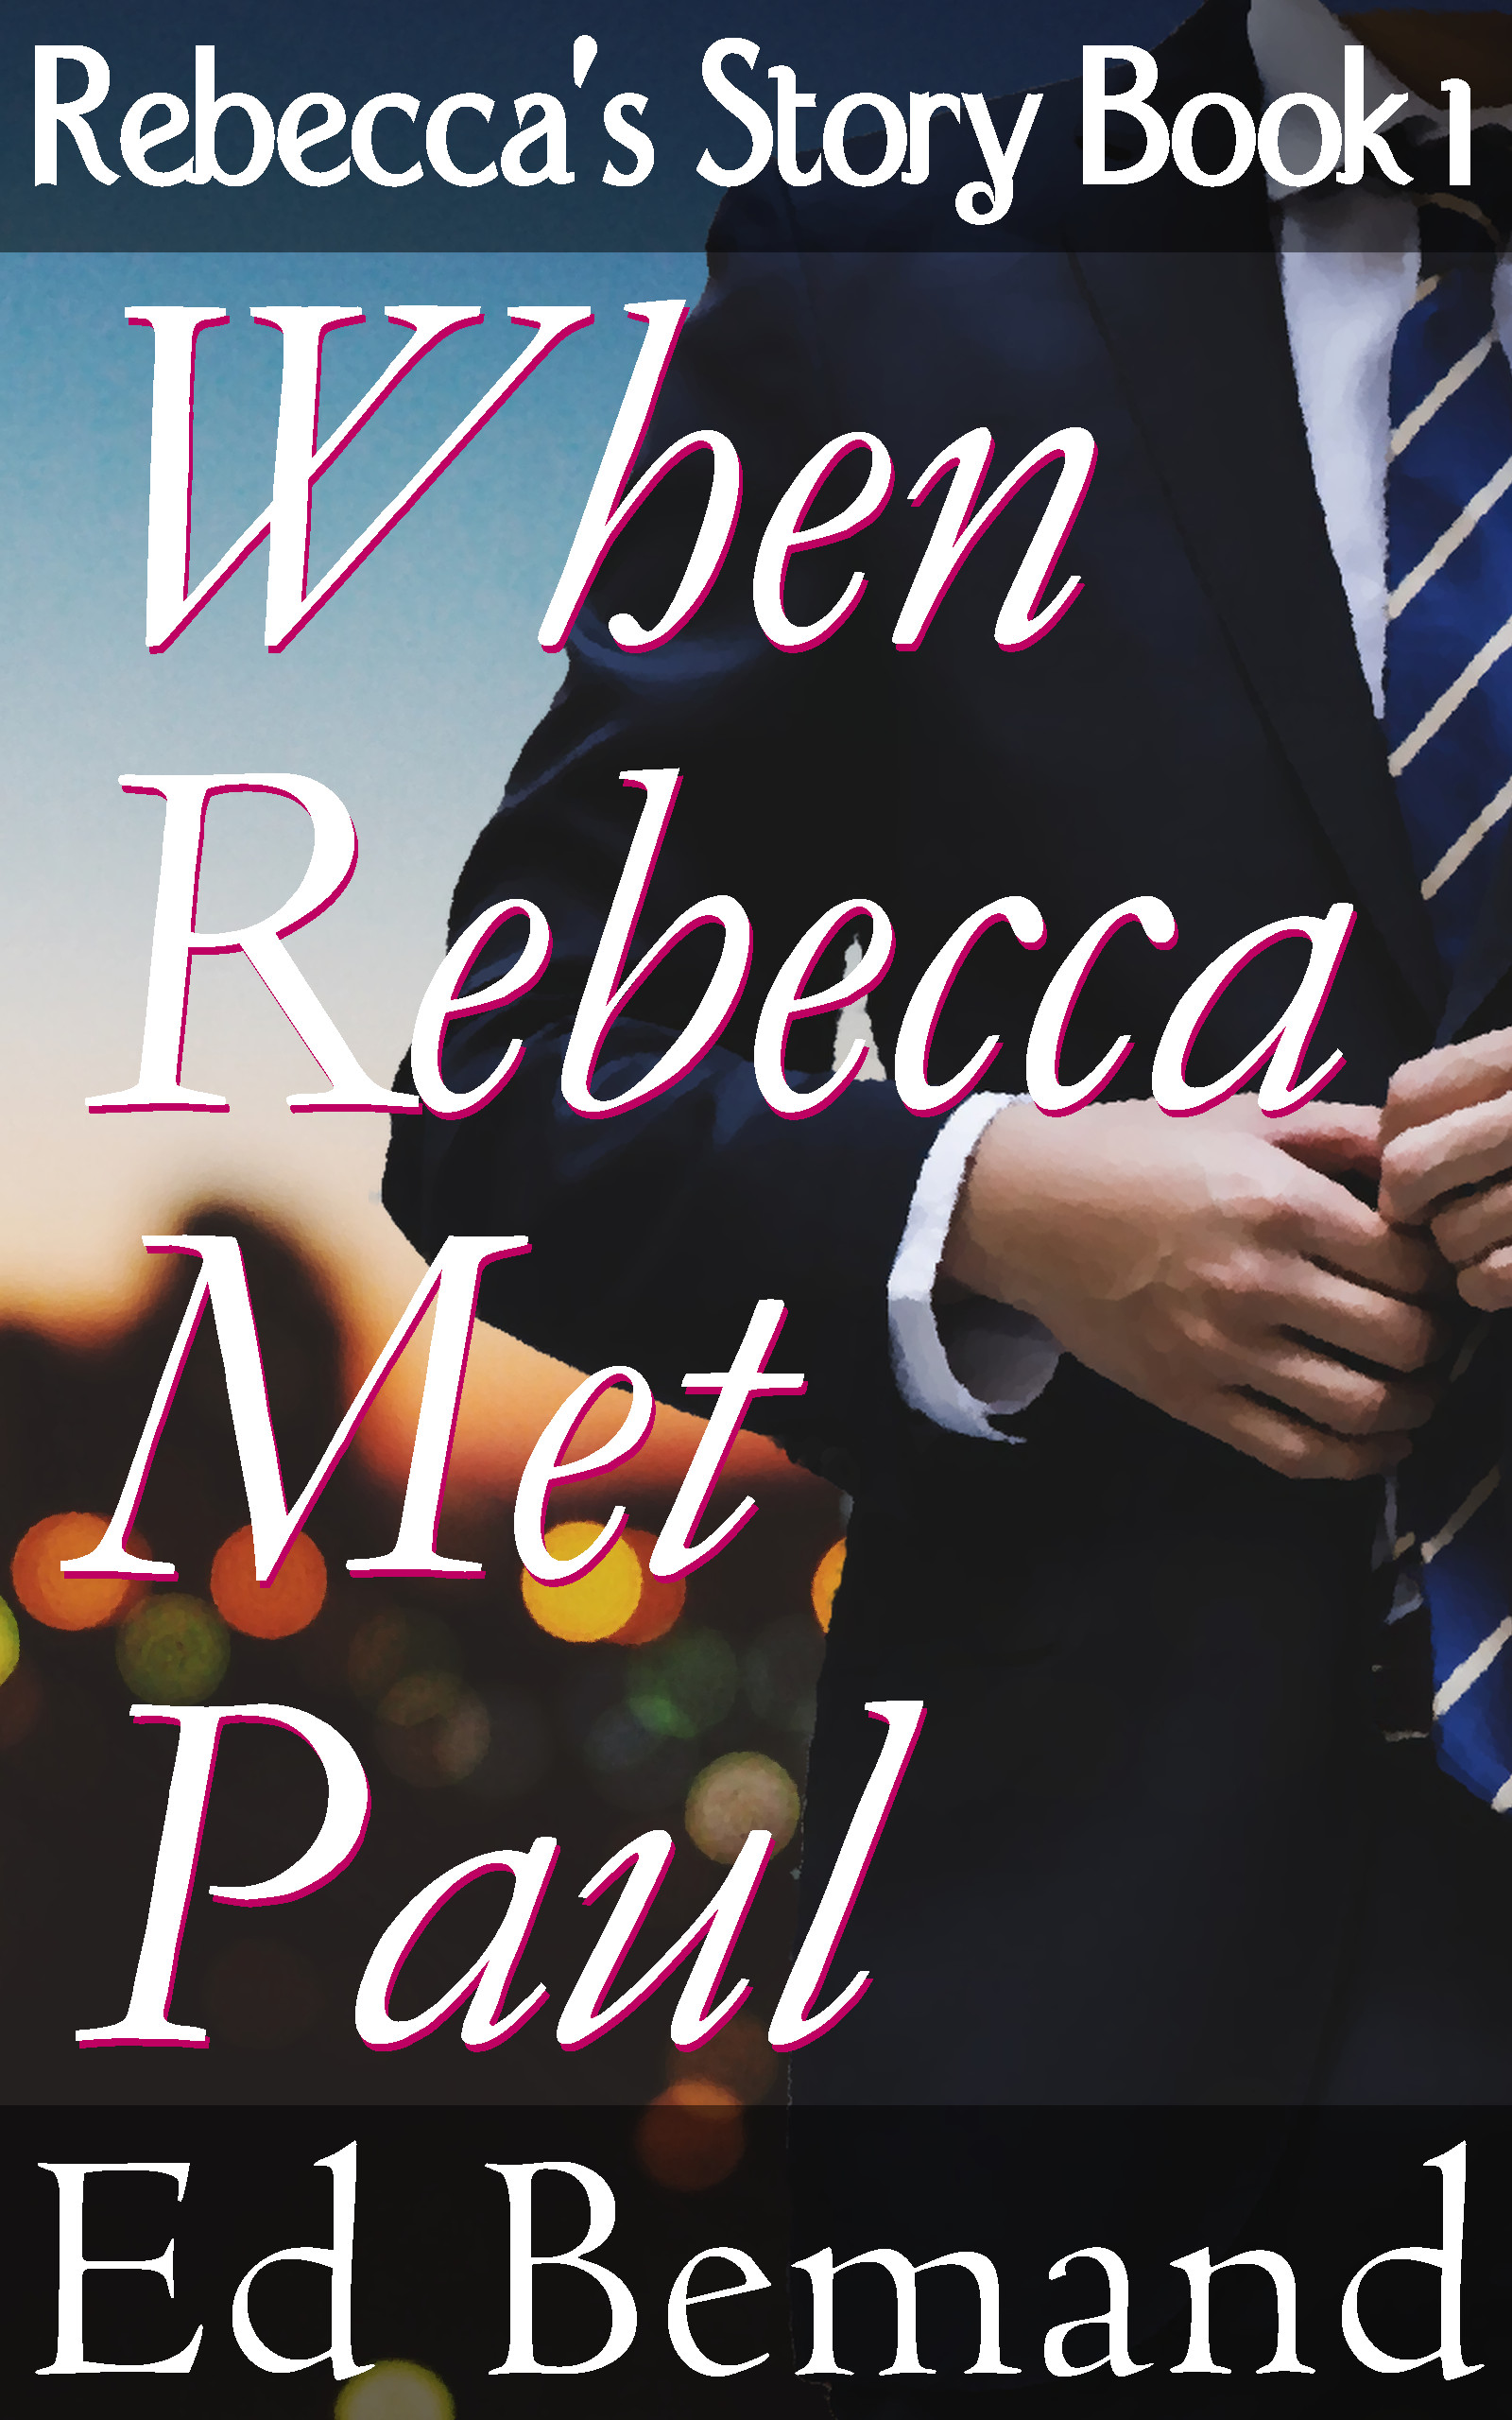 Rebecca's Story Book 1, When Rebecca Met Paul, by Ed Bemand